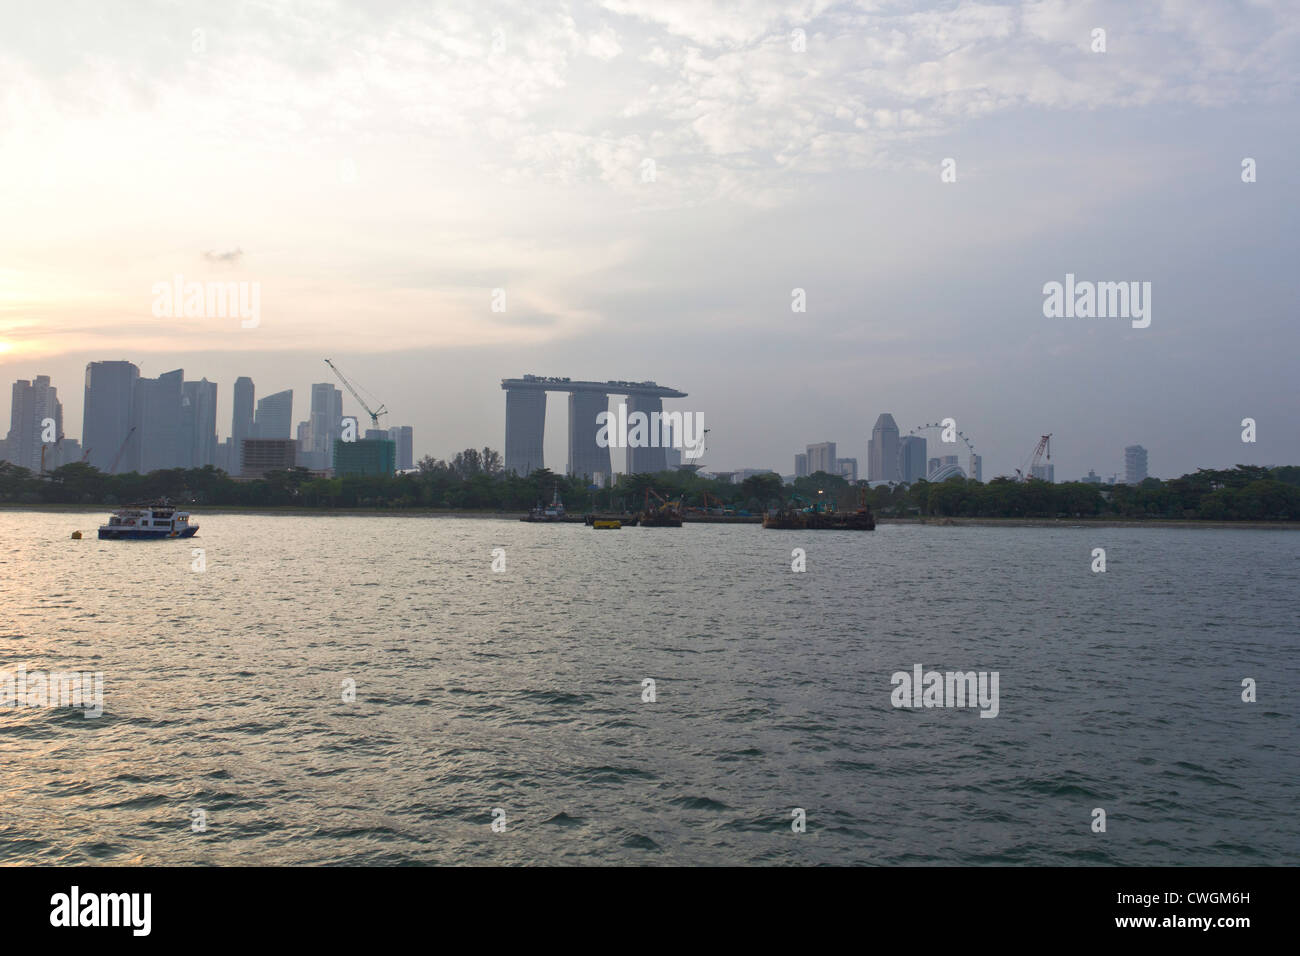 Il Marina Bay Sands e Flyer lungo con lo skyline di Singapore come si vede da una crociera del porto. Lo skyline di Singapore ha un ottimo aspetto. Foto Stock